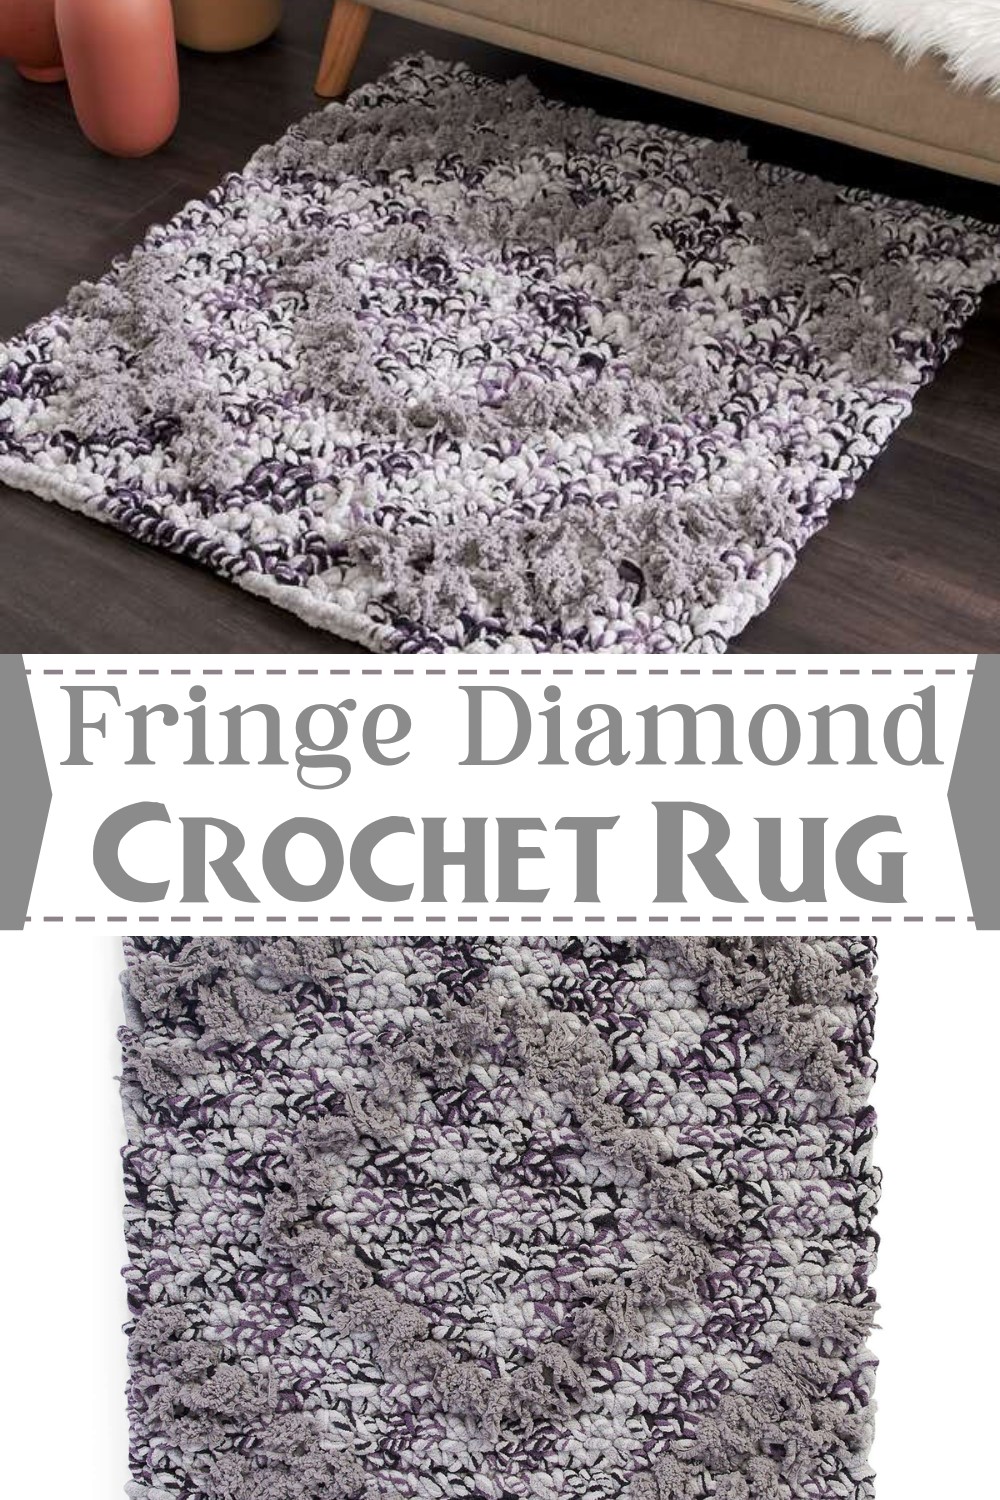 Fringe Diamond Rug Crochet Pattern